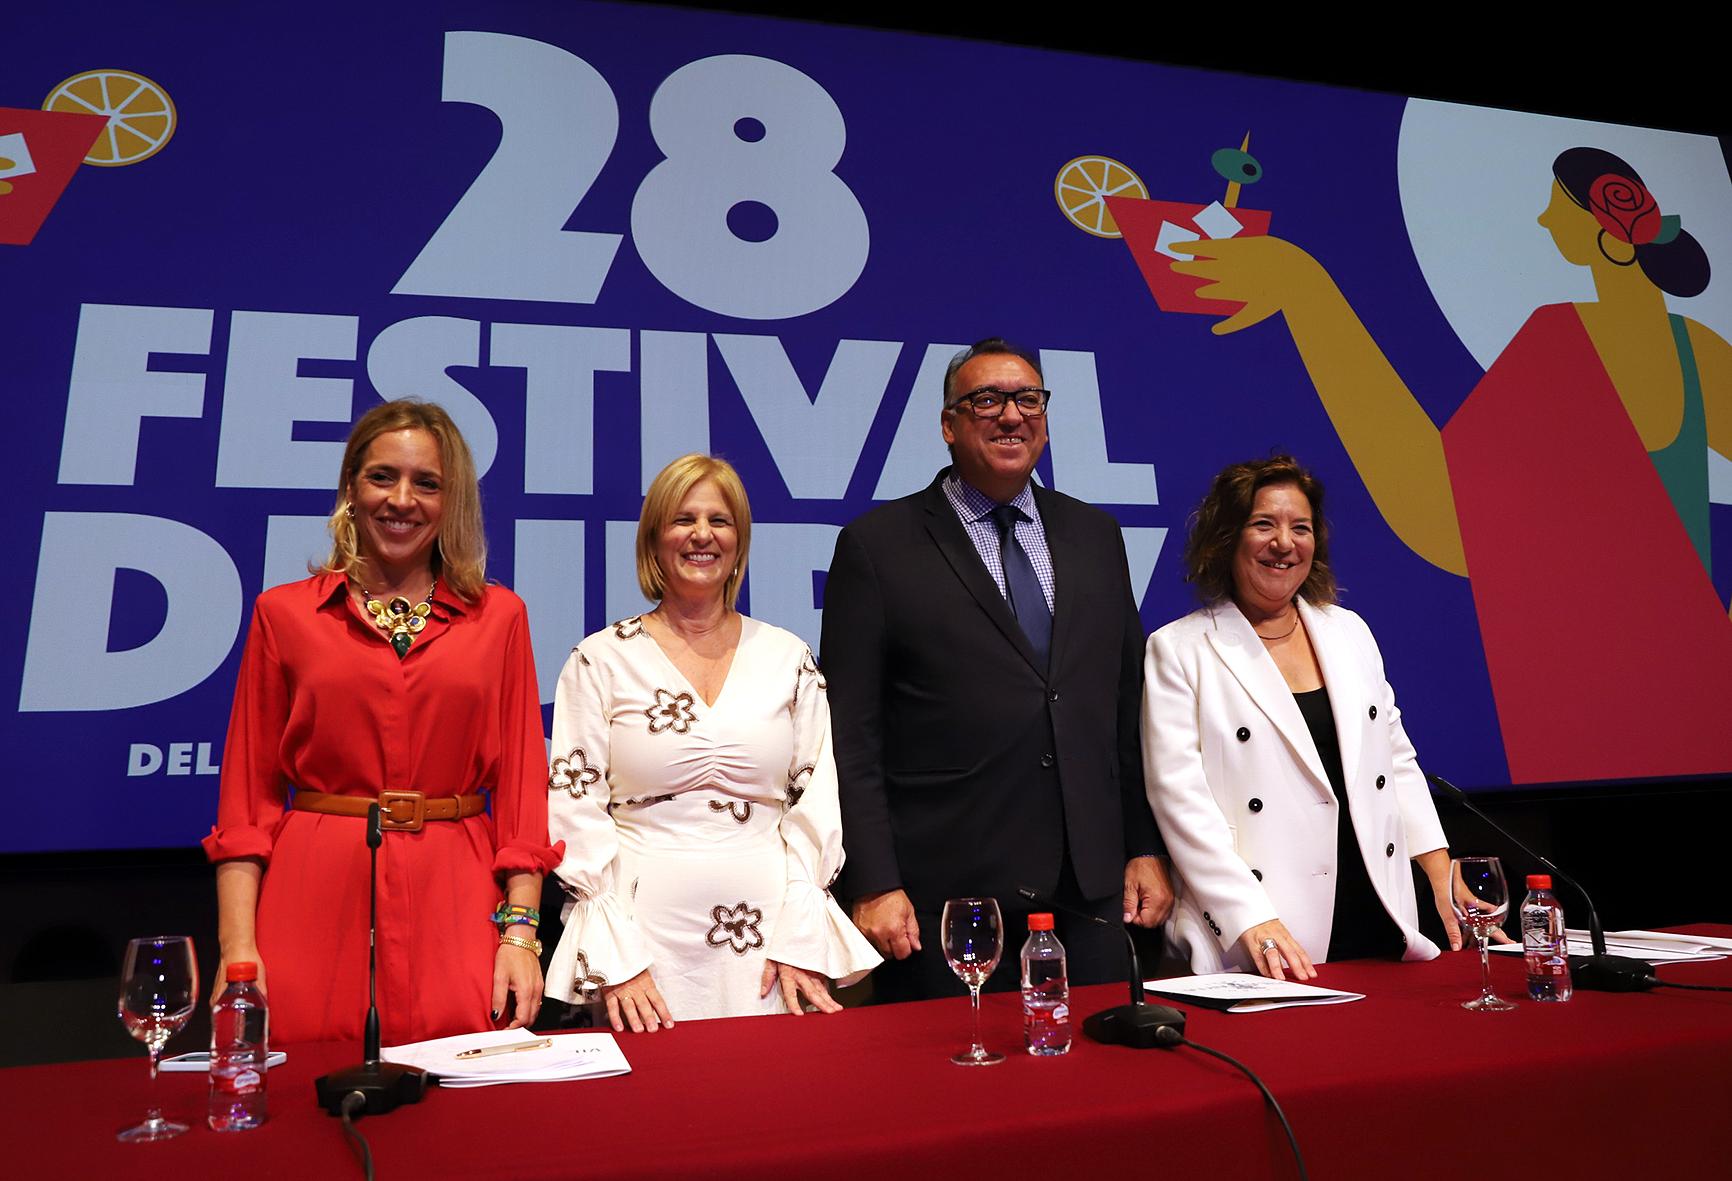 El Festival de Jerez presenta una XXVIII edición que abraza su esencia más genuina